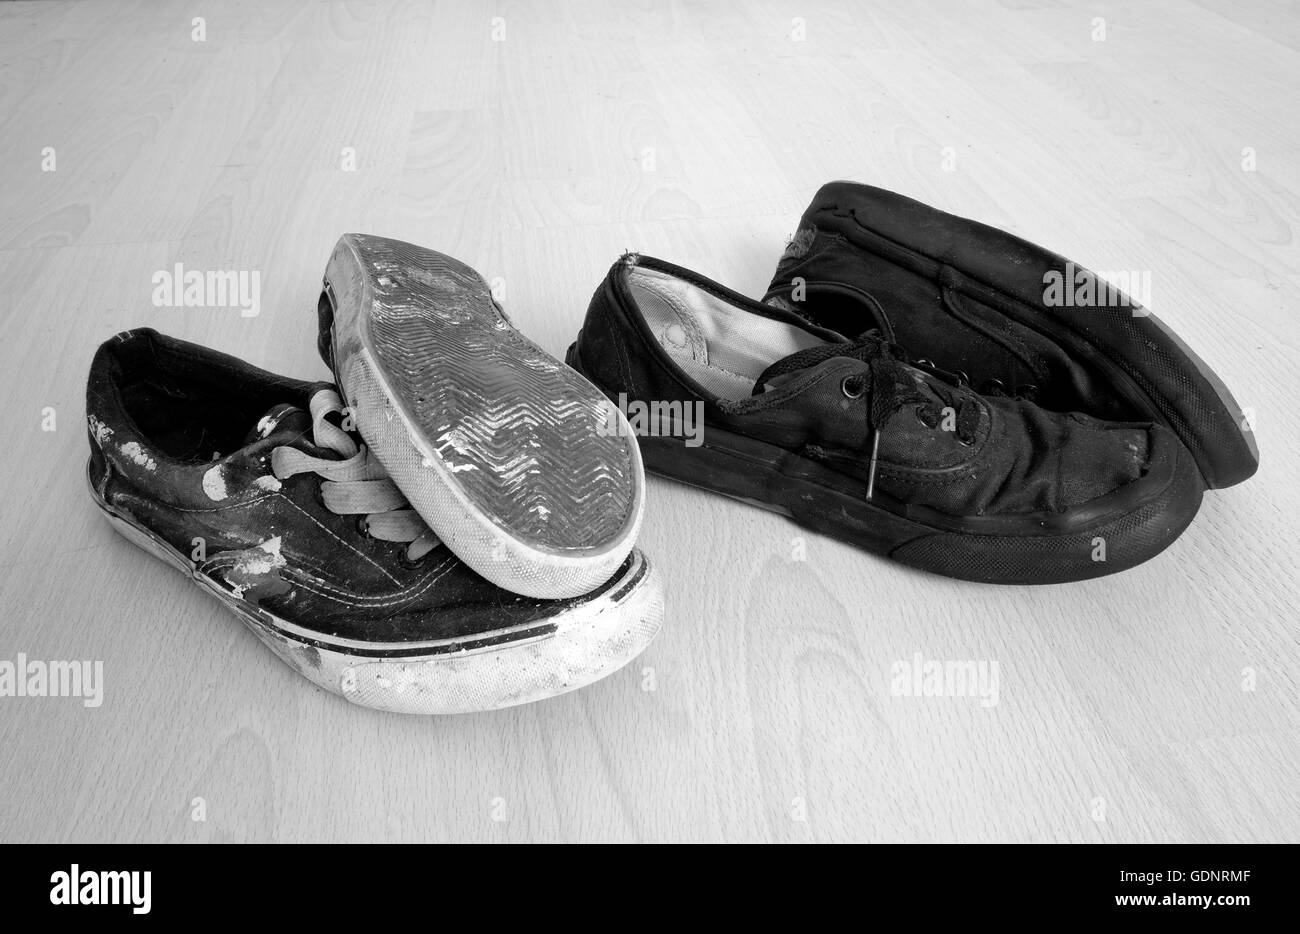 Deux paires de vieilles chaussures bien usé, une paire utilisée par une serveuse l'autre paire par un décorateur ou un peintre. 3 Juillet 2016 Banque D'Images